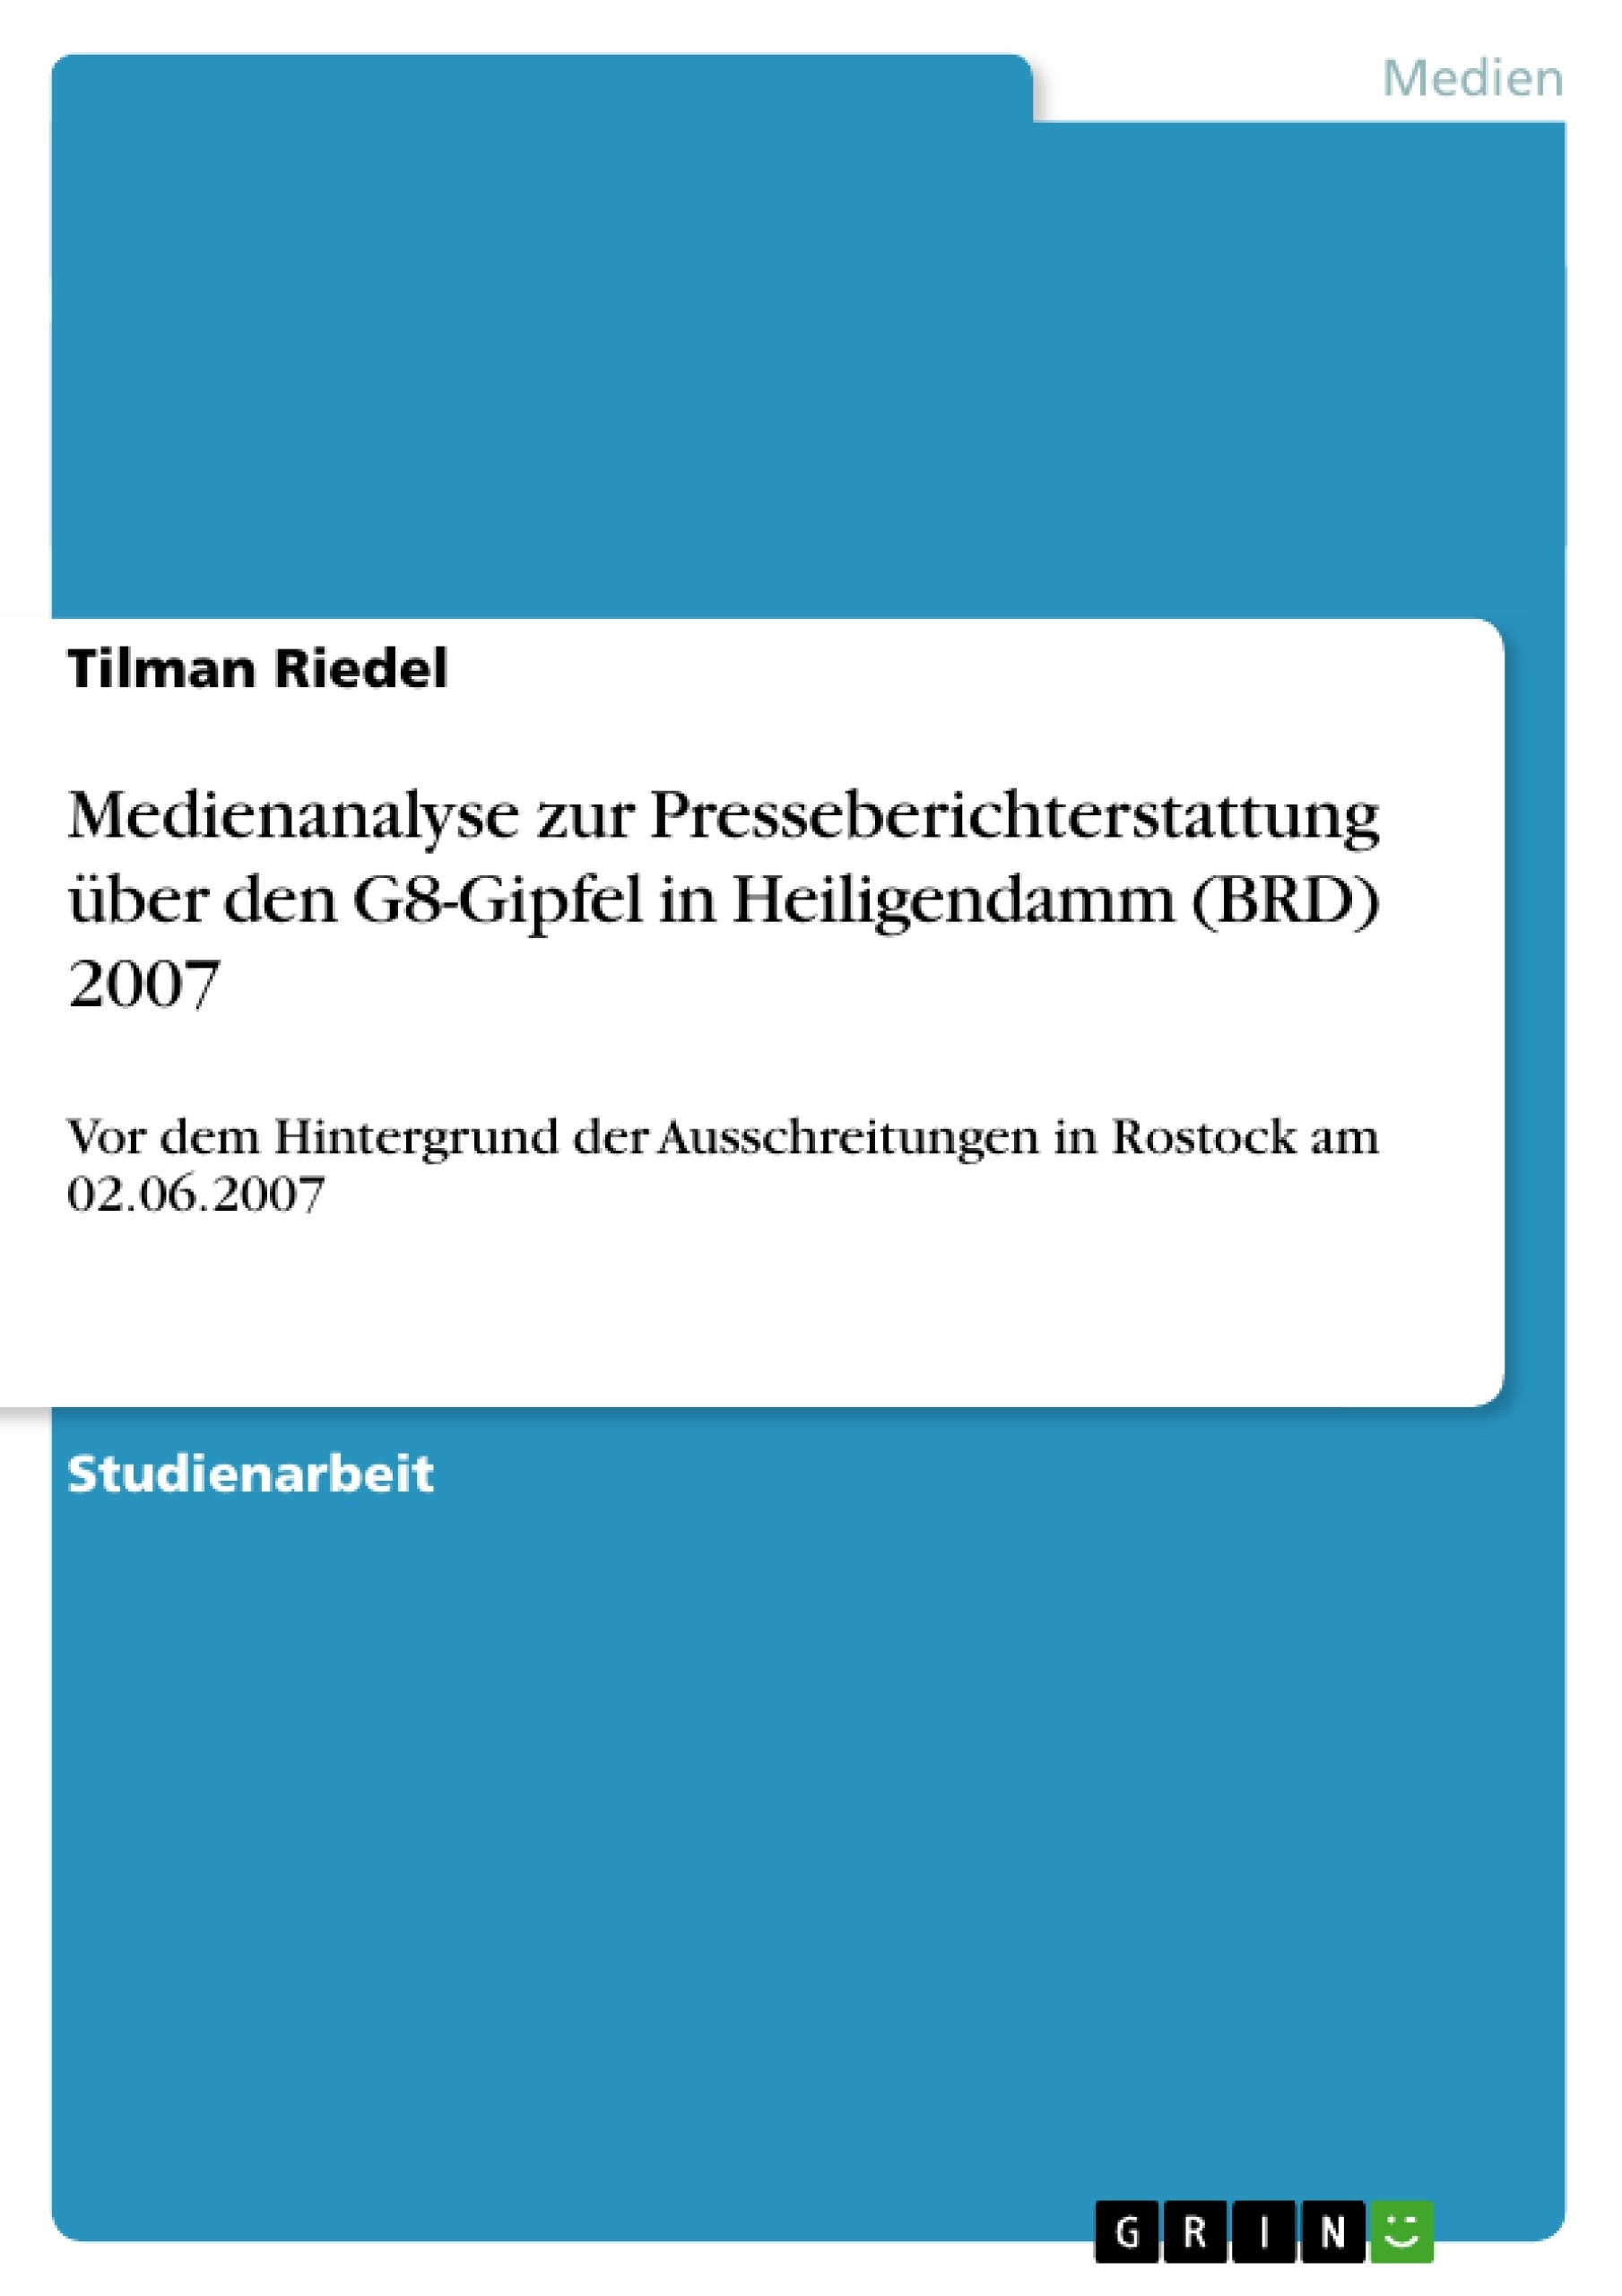 Titel: Medienanalyse zur Presseberichterstattung über den G8-Gipfel in Heiligendamm (BRD) 2007